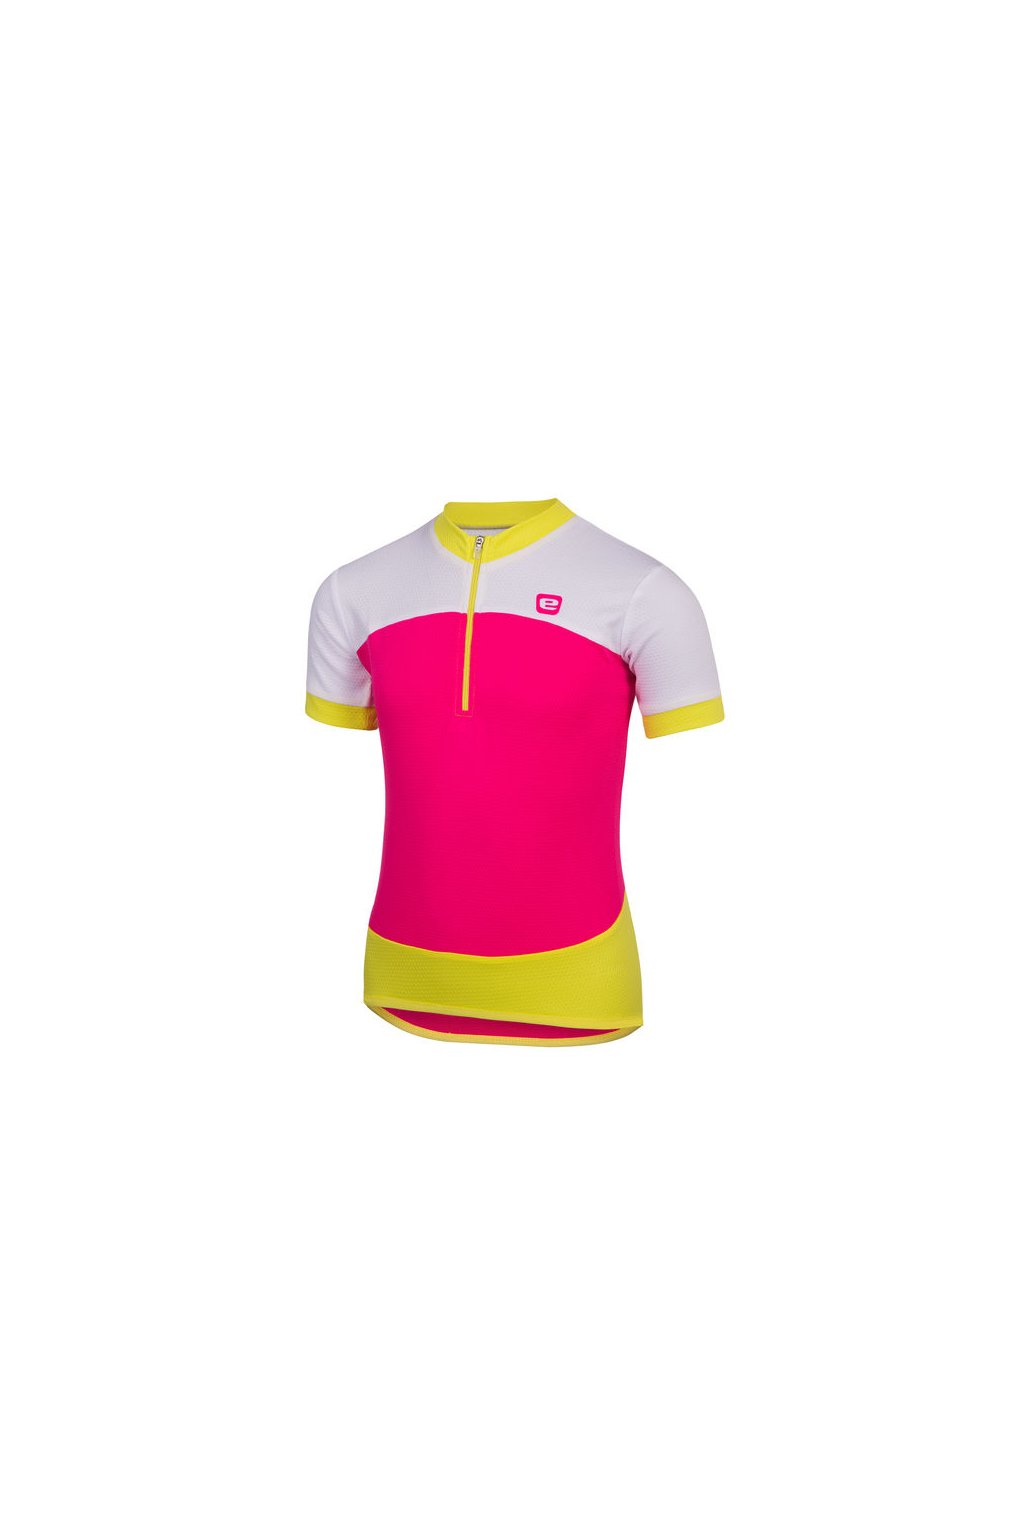 Dětský letní cyklistický dres ETAPE PEDDY, růžová|limeta